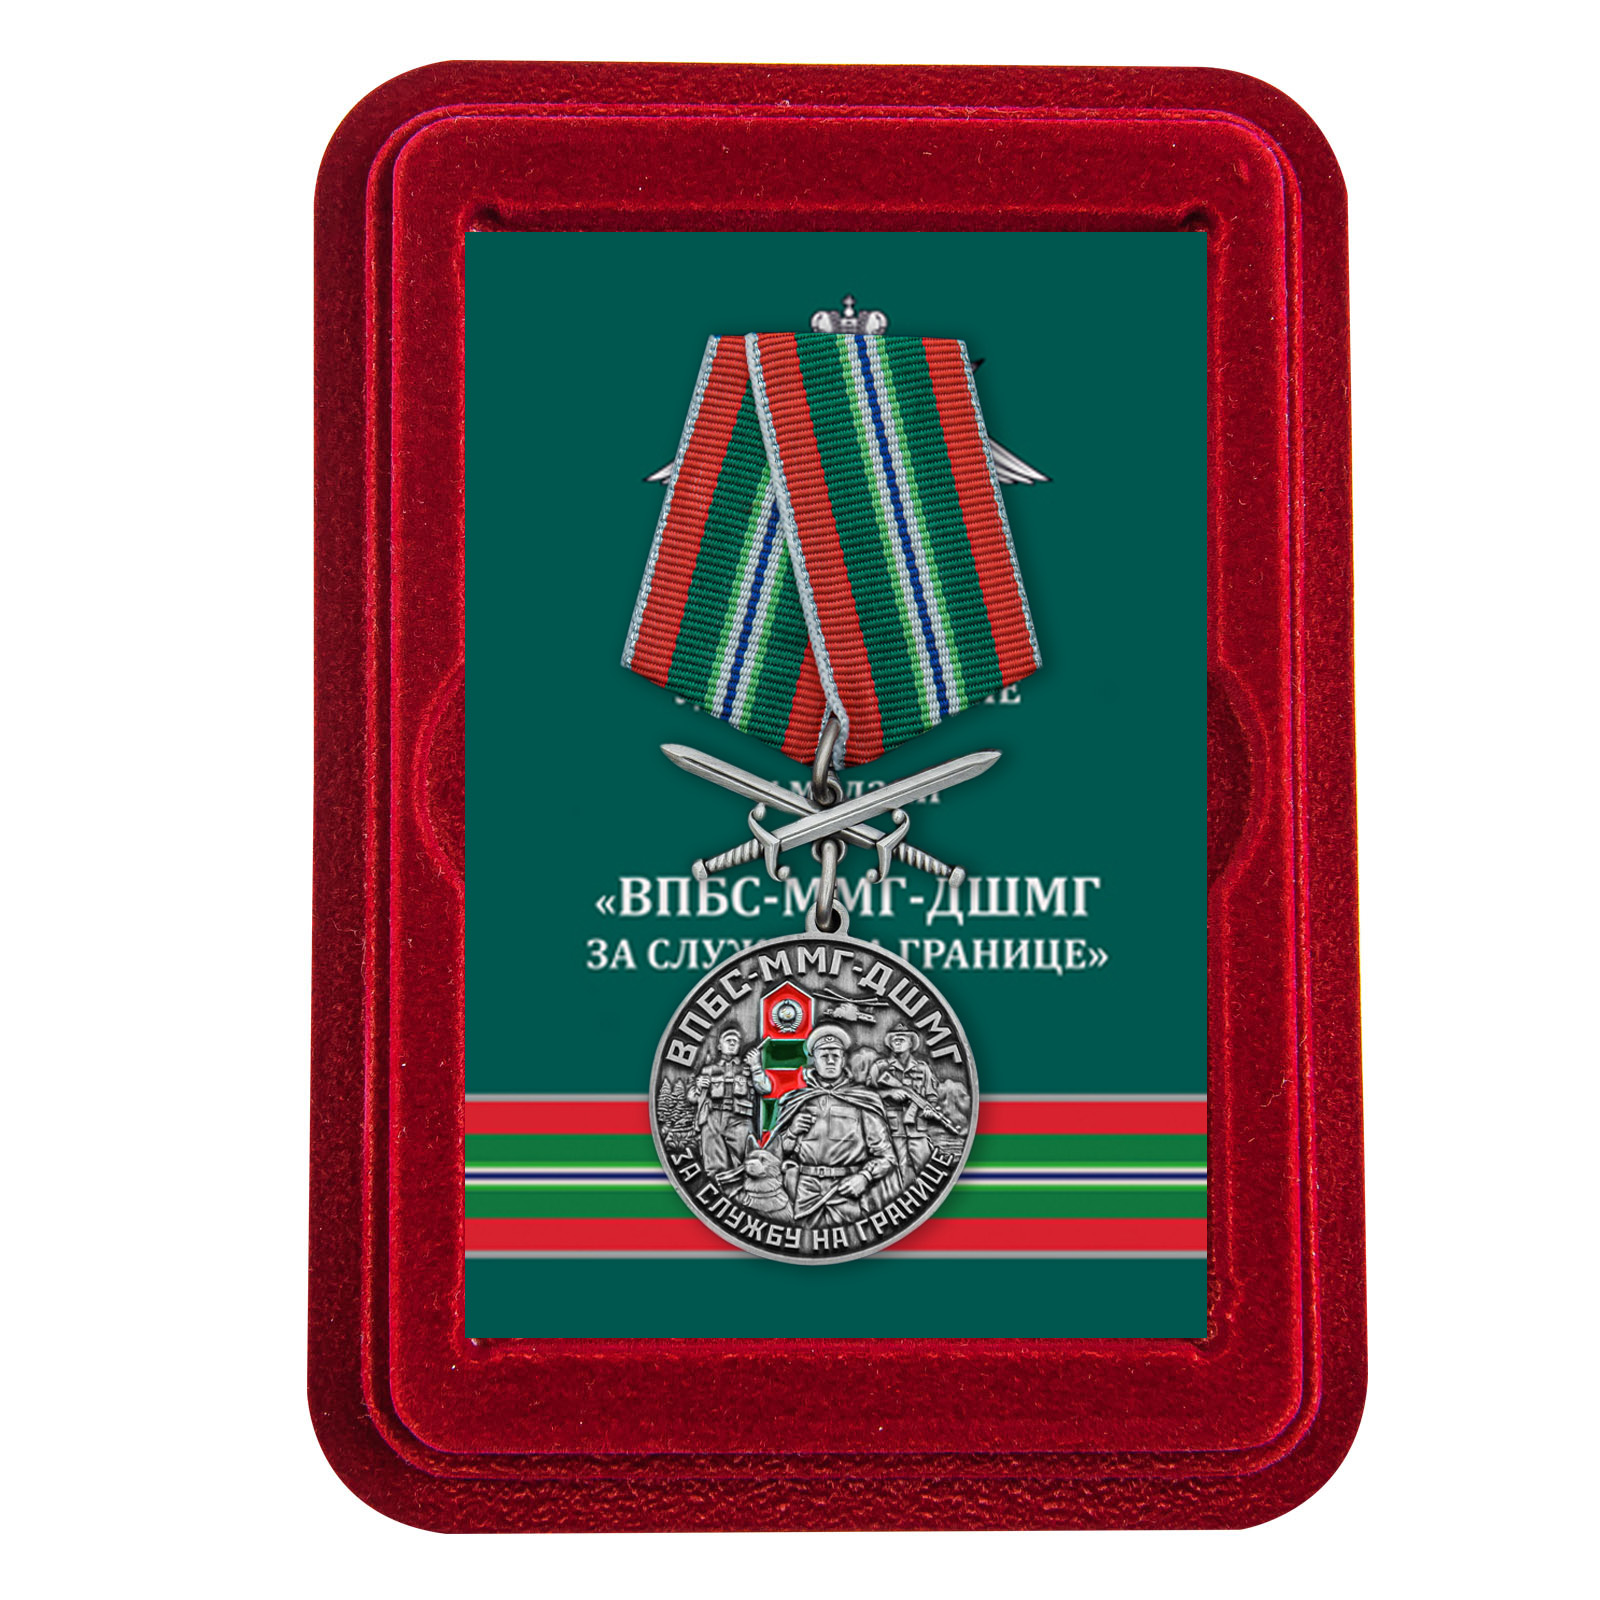 Медаль "За службу в ВПБС-ММГ-ДШМГ" с мечами в футляре из флока